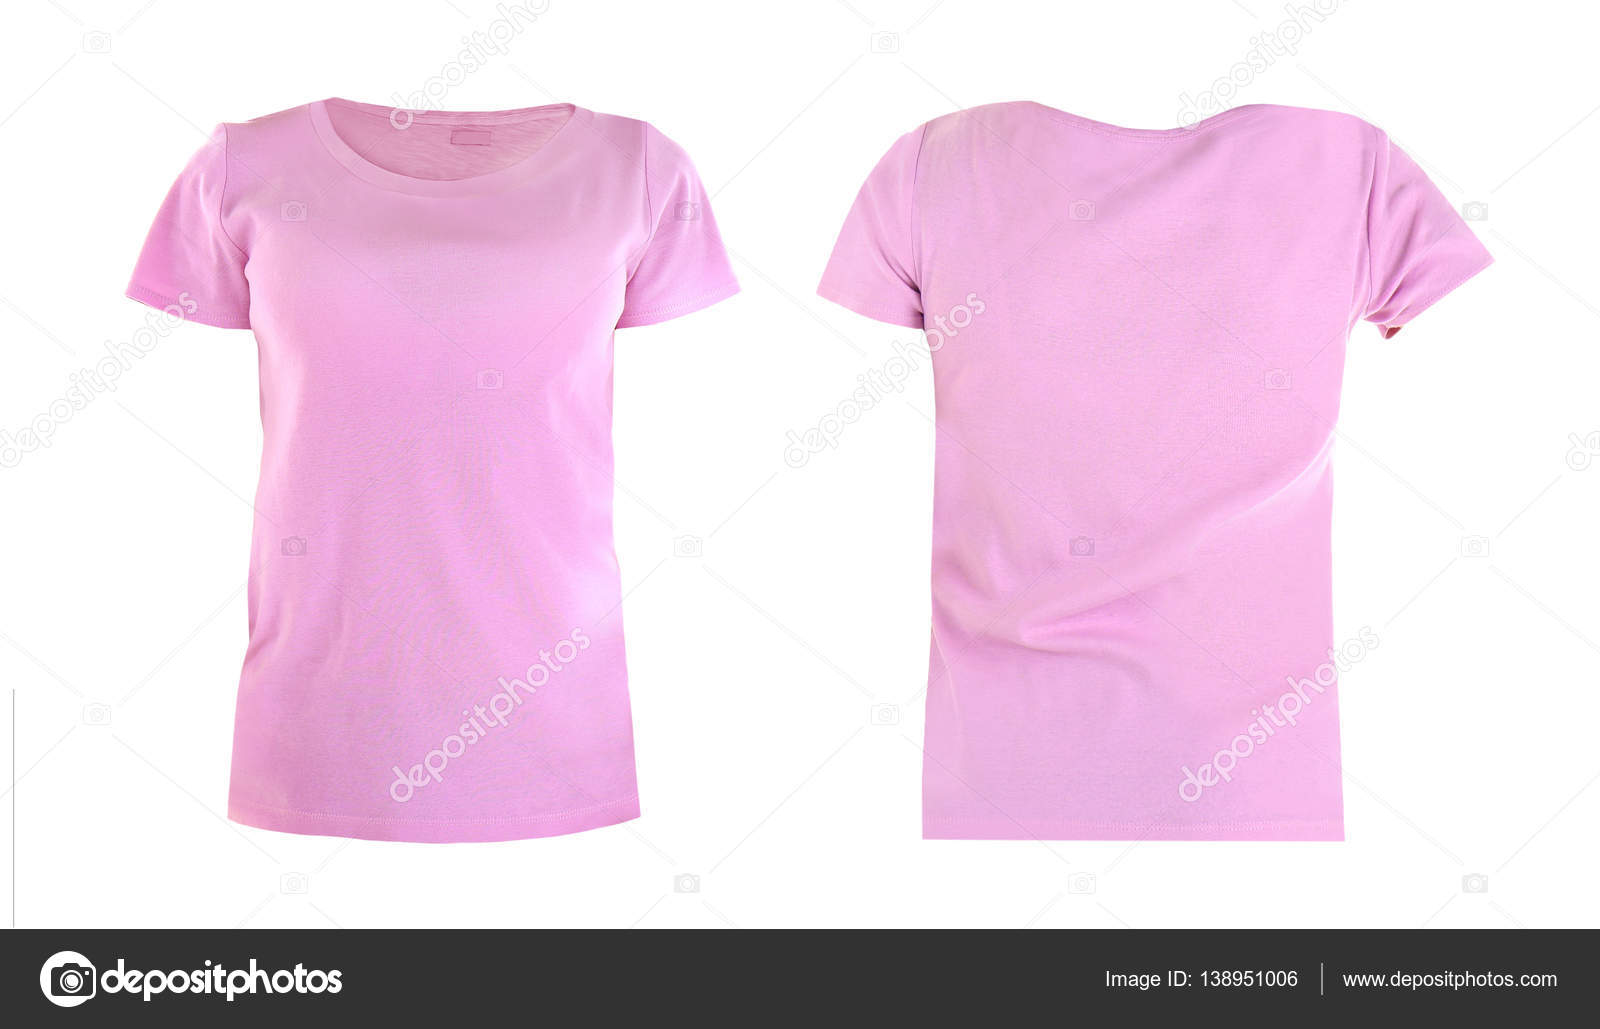 Vista frontal y trasera de la camiseta: fotografía de stock © belchonock  #138951006